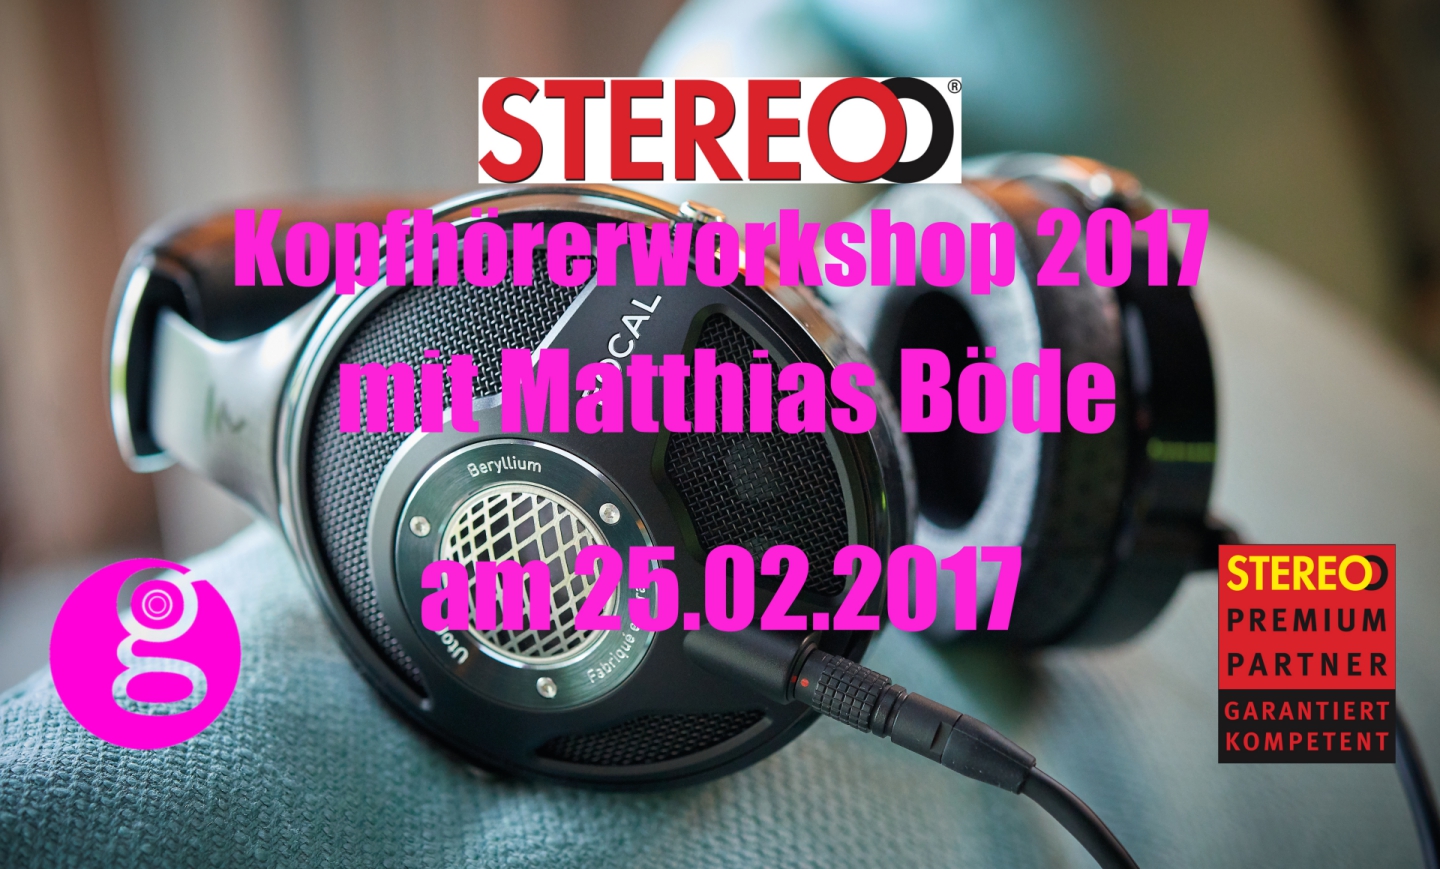 "Stereo"-Kopfhörerworkshop mit Matthias Böde von der Stereo